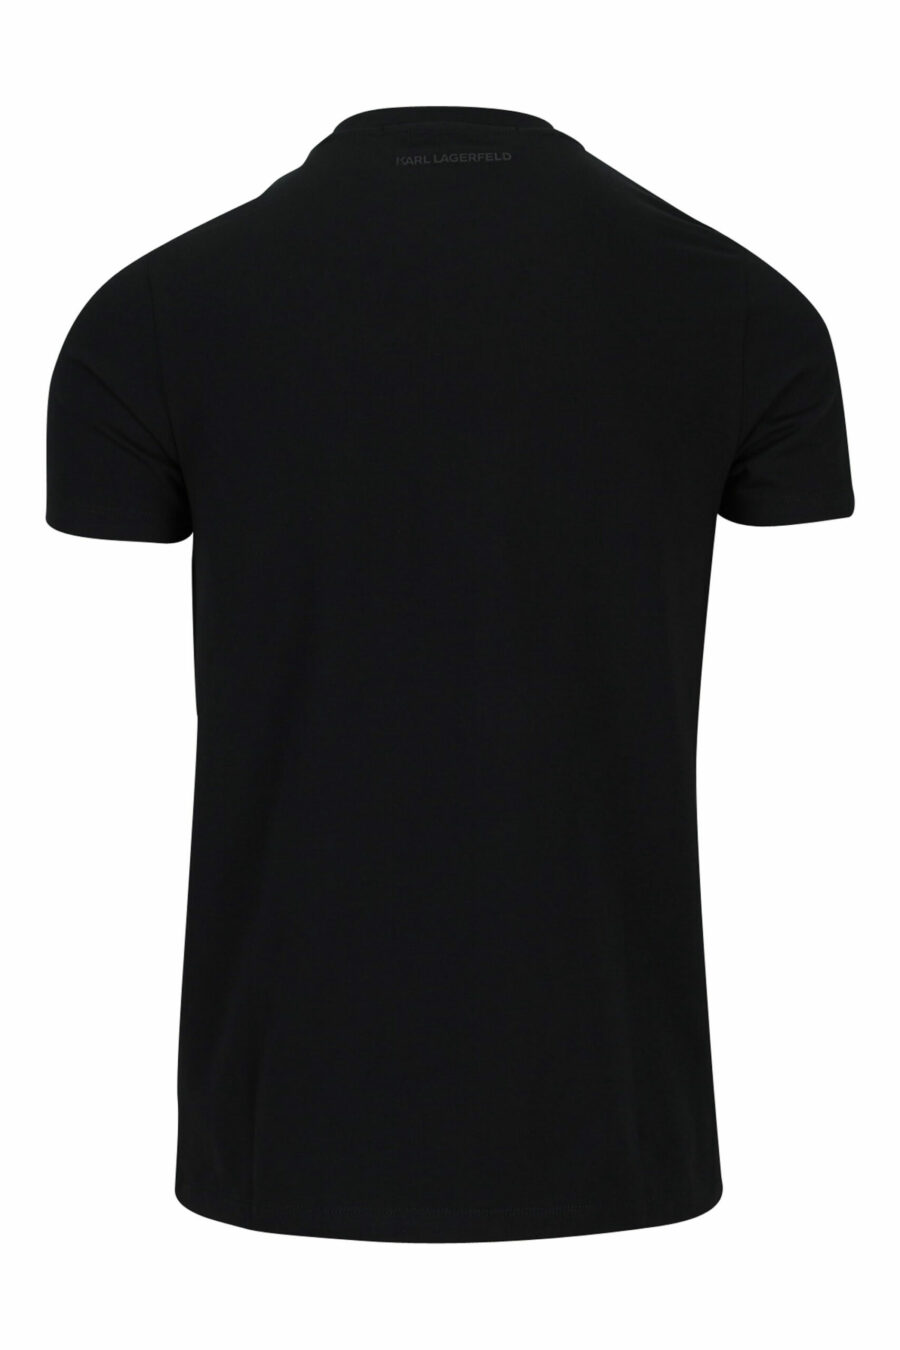 T-shirt preta com maxilogo "karl" dourado - 4062226681872 1 à escala